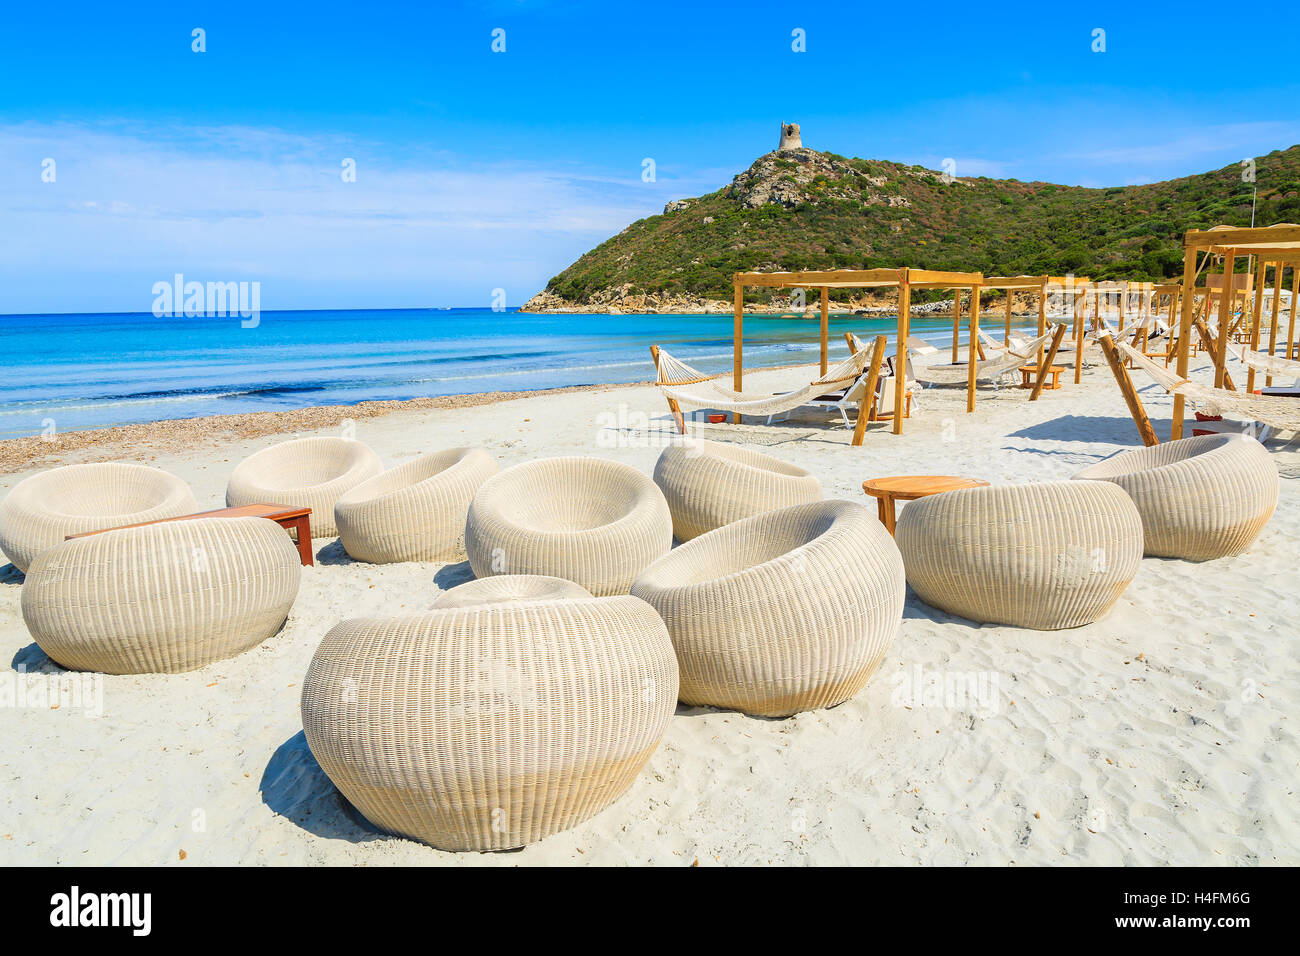 Sardinia beach bar hi-res stock photography and images - Alamy